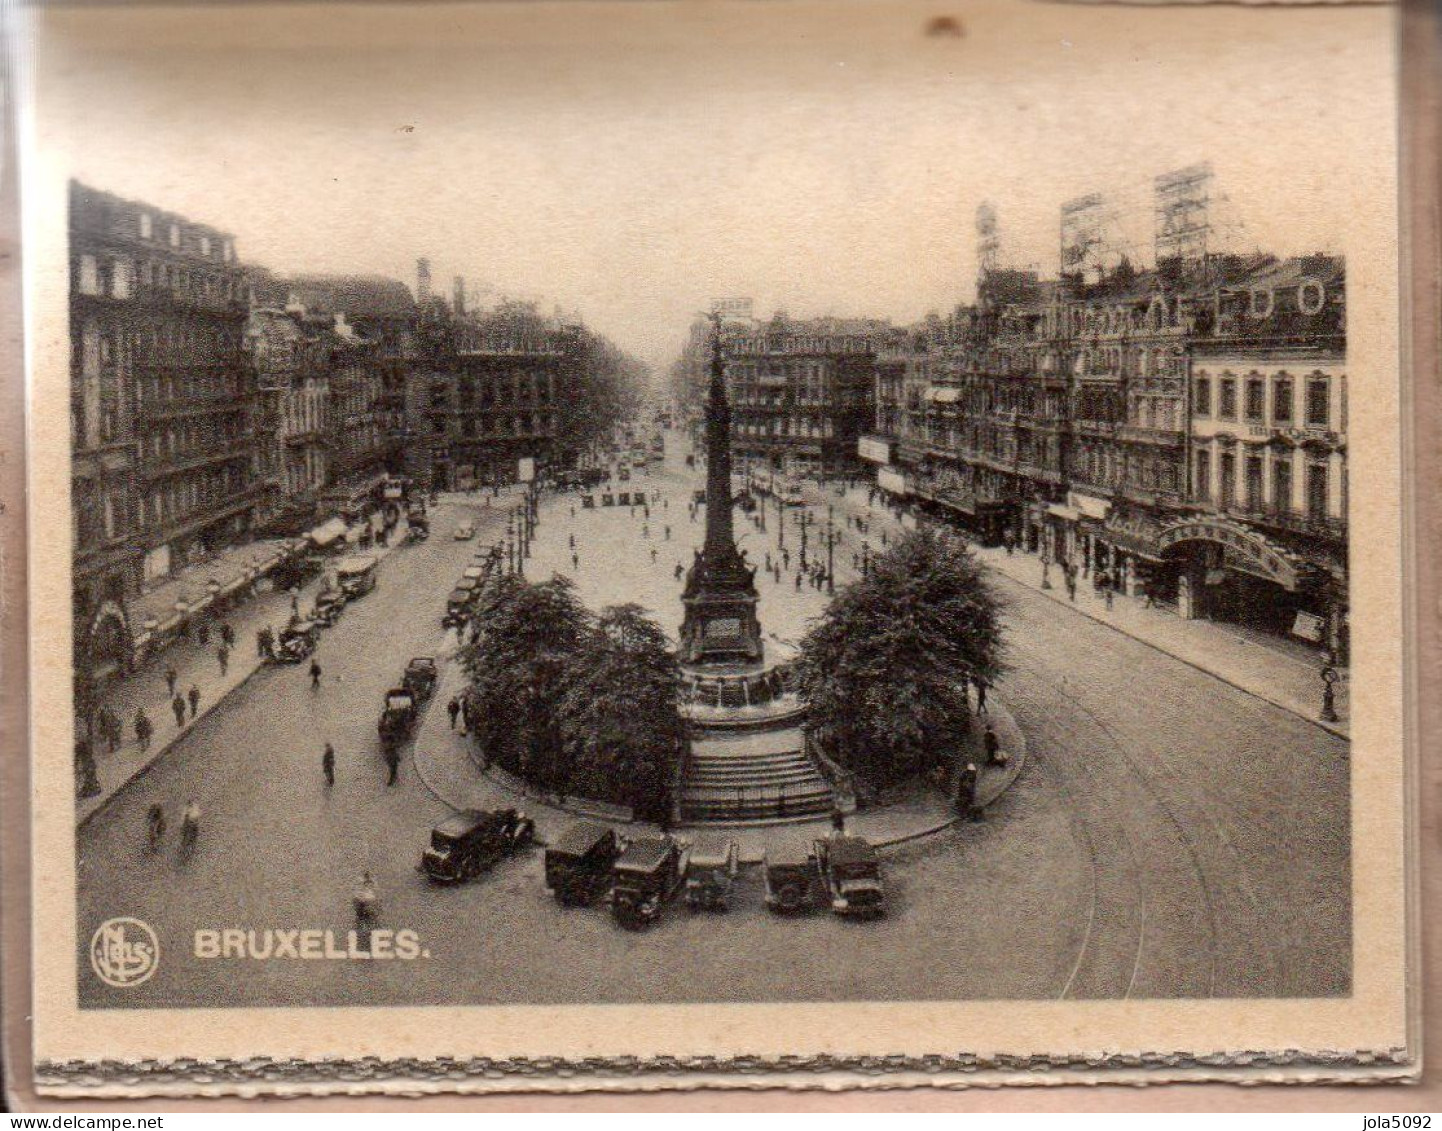 BELGIQUE - BRUXELLES - Carnet de 11 photos